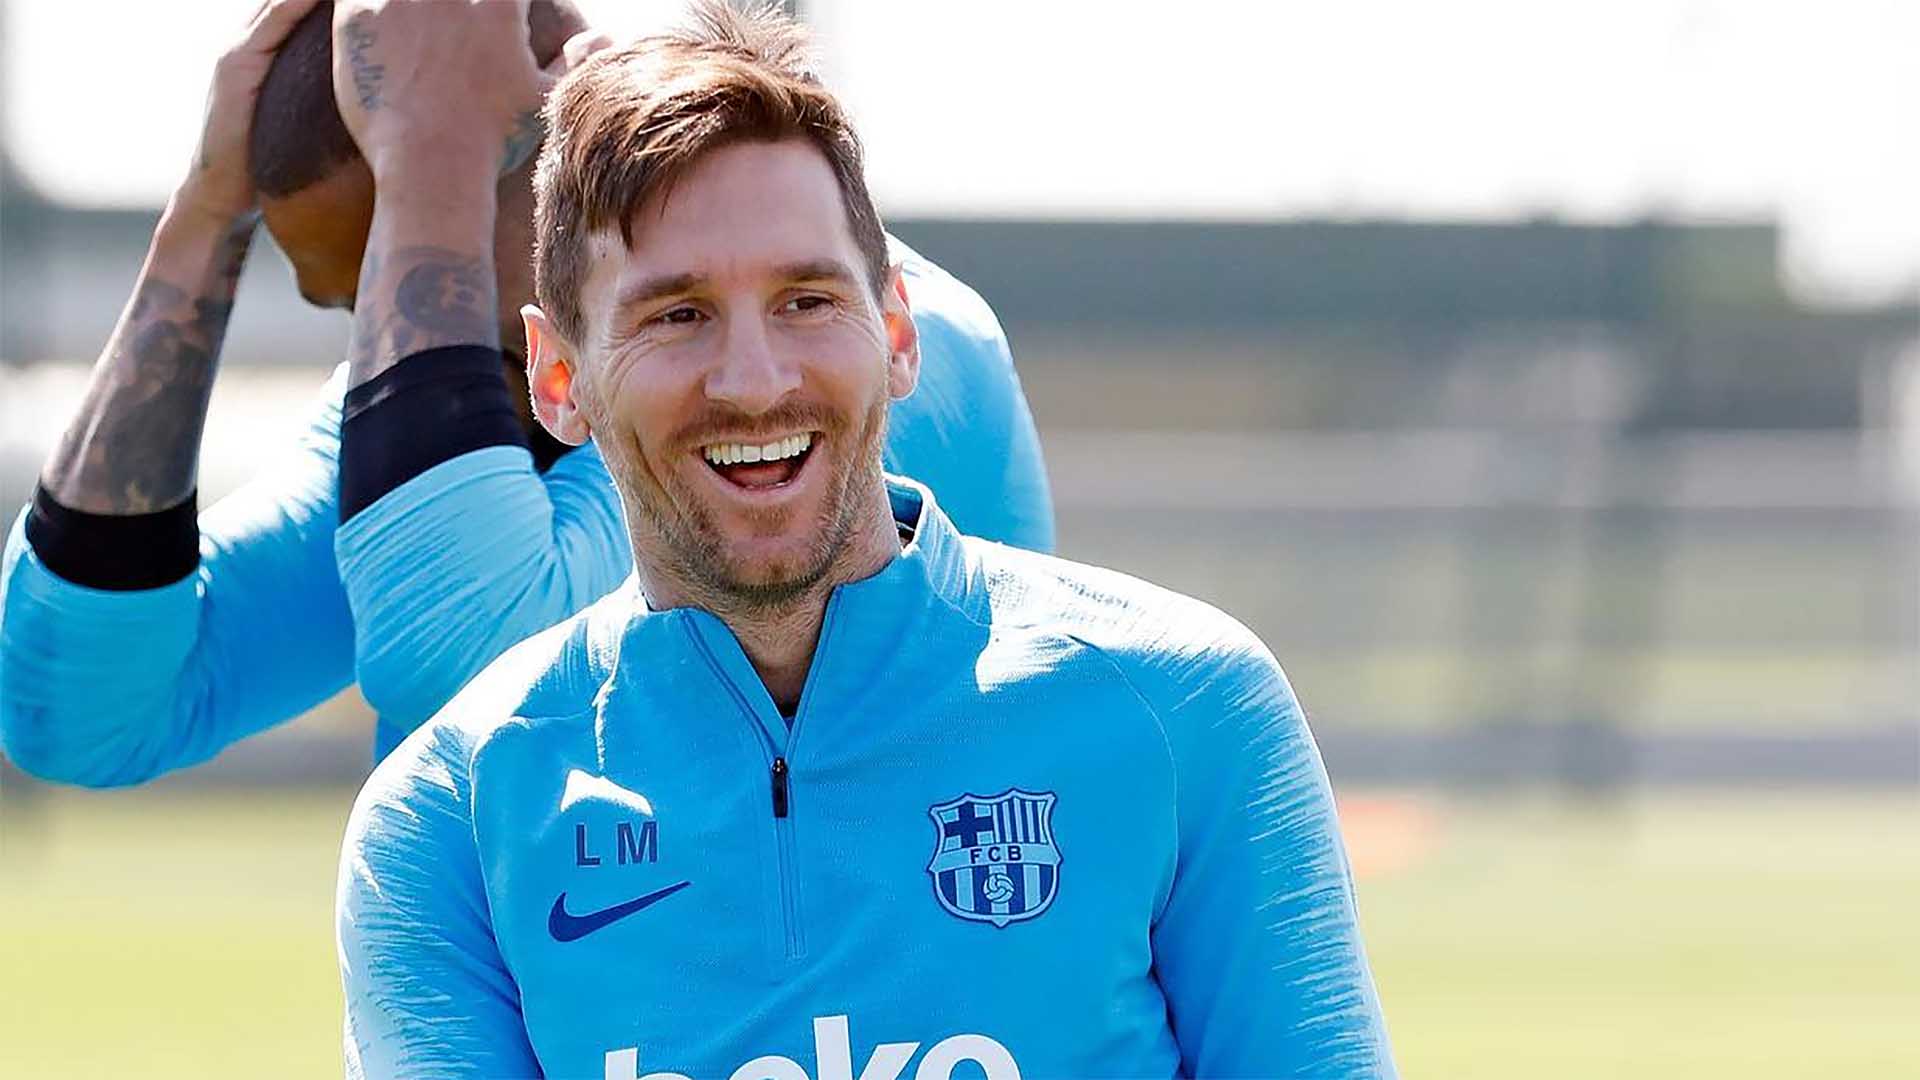 DE FRENTE Messi quiere ser feliz - UNANIMO Deportes